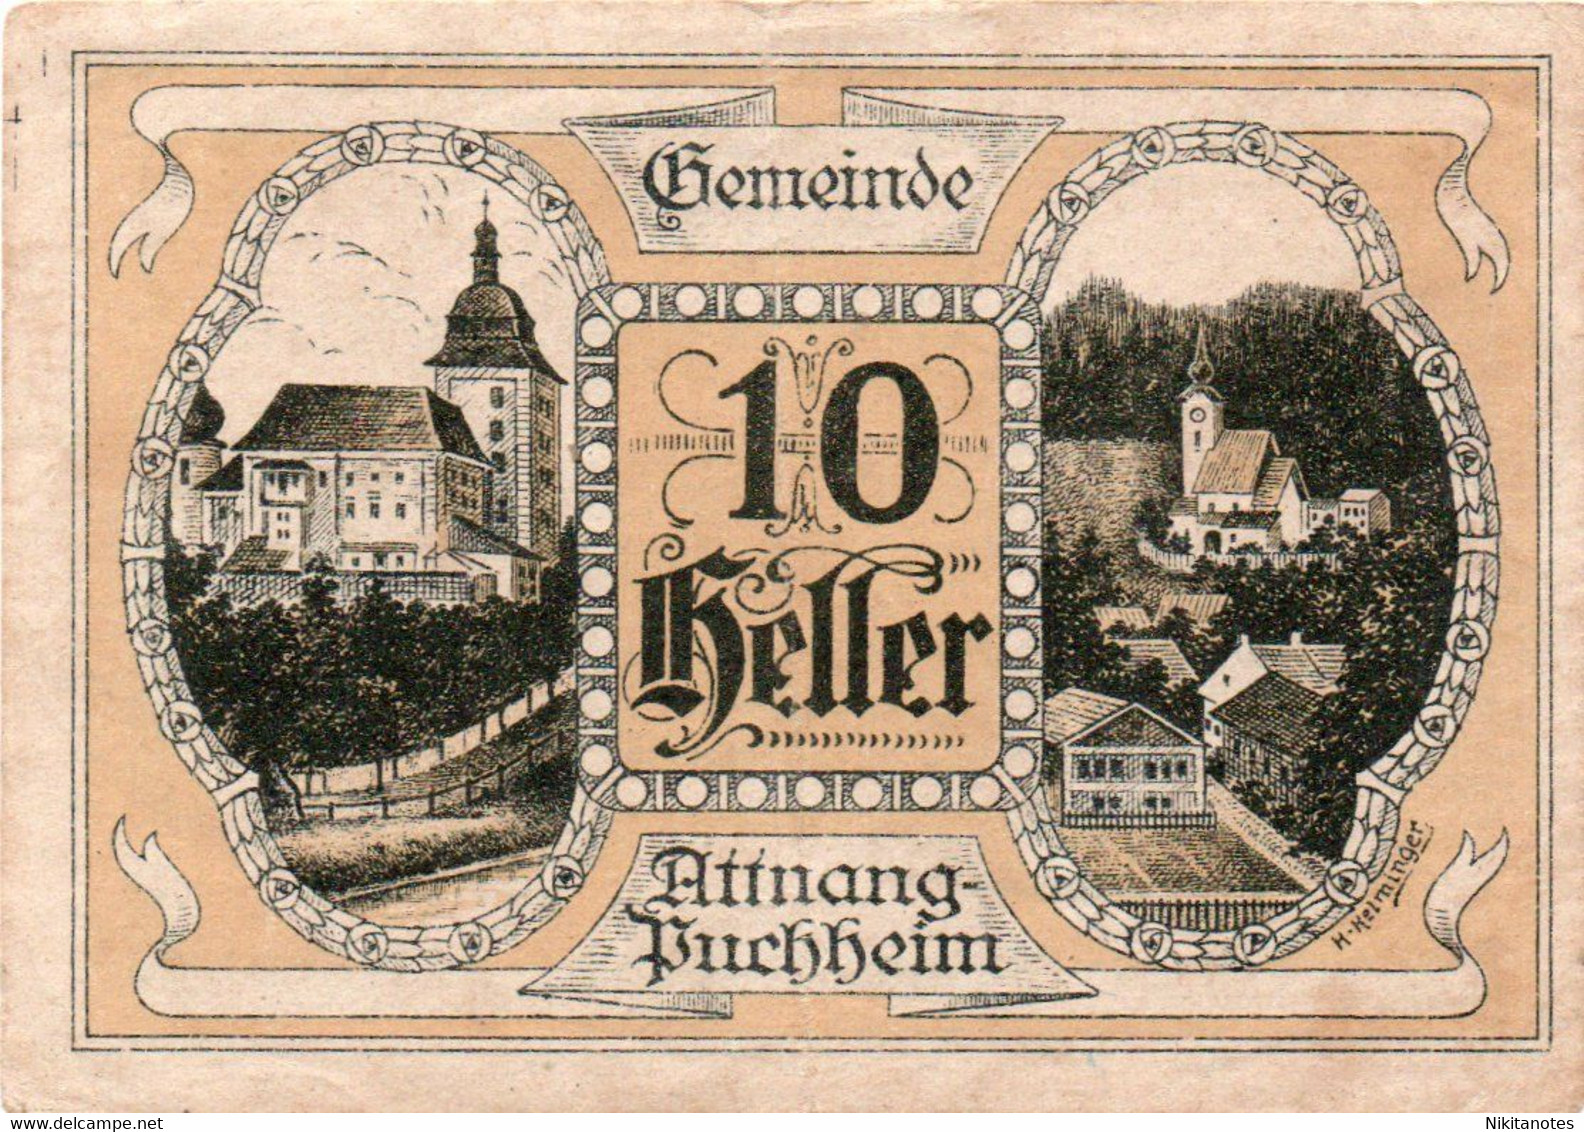 Austria Notgeld 10 Heller 1920 Attnang-Puchheim See Scan Note - Autriche